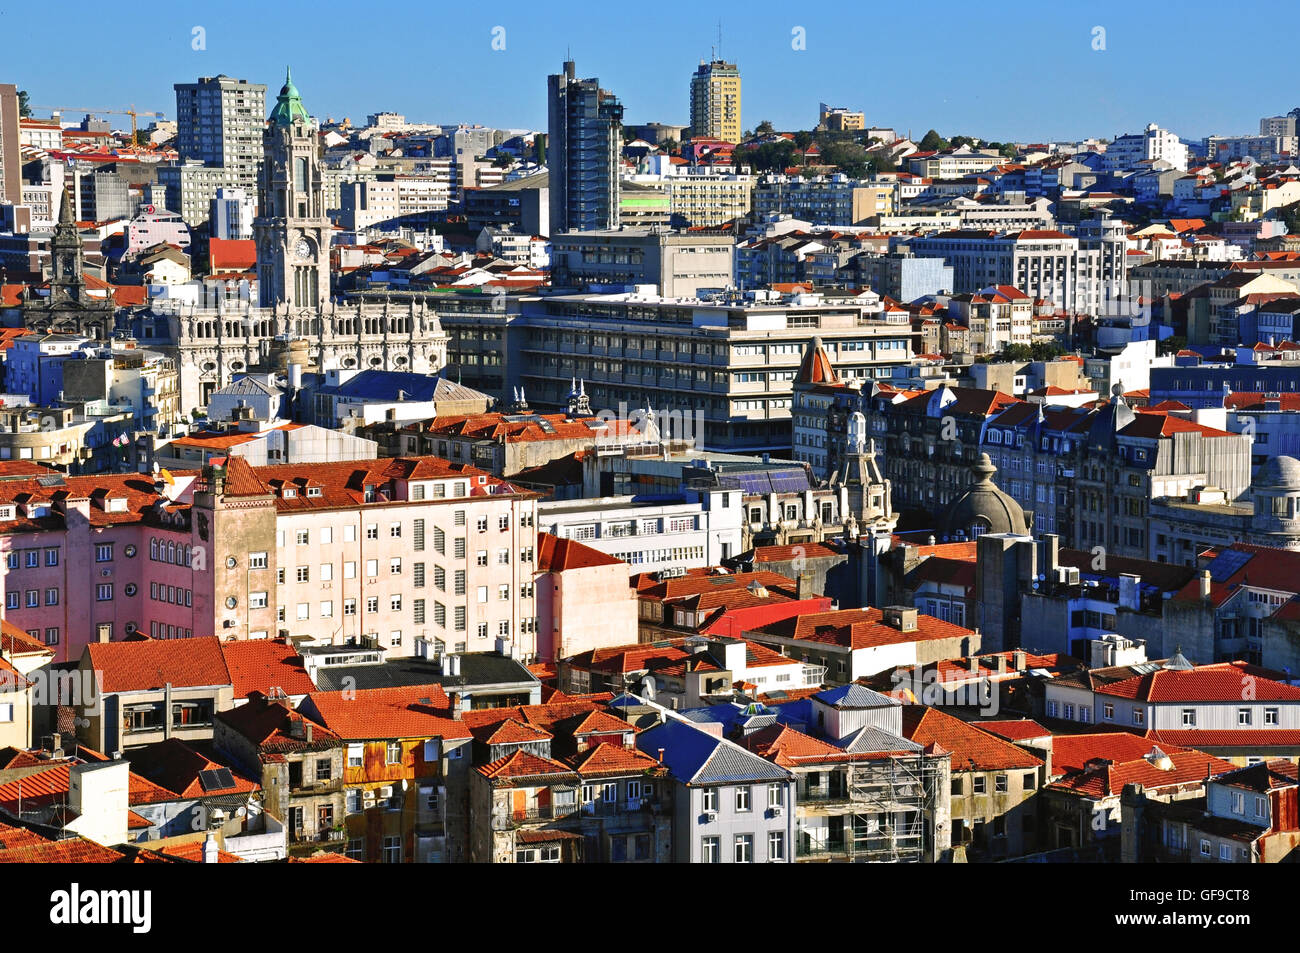 Oporto city centre, Portugal Stock Photo